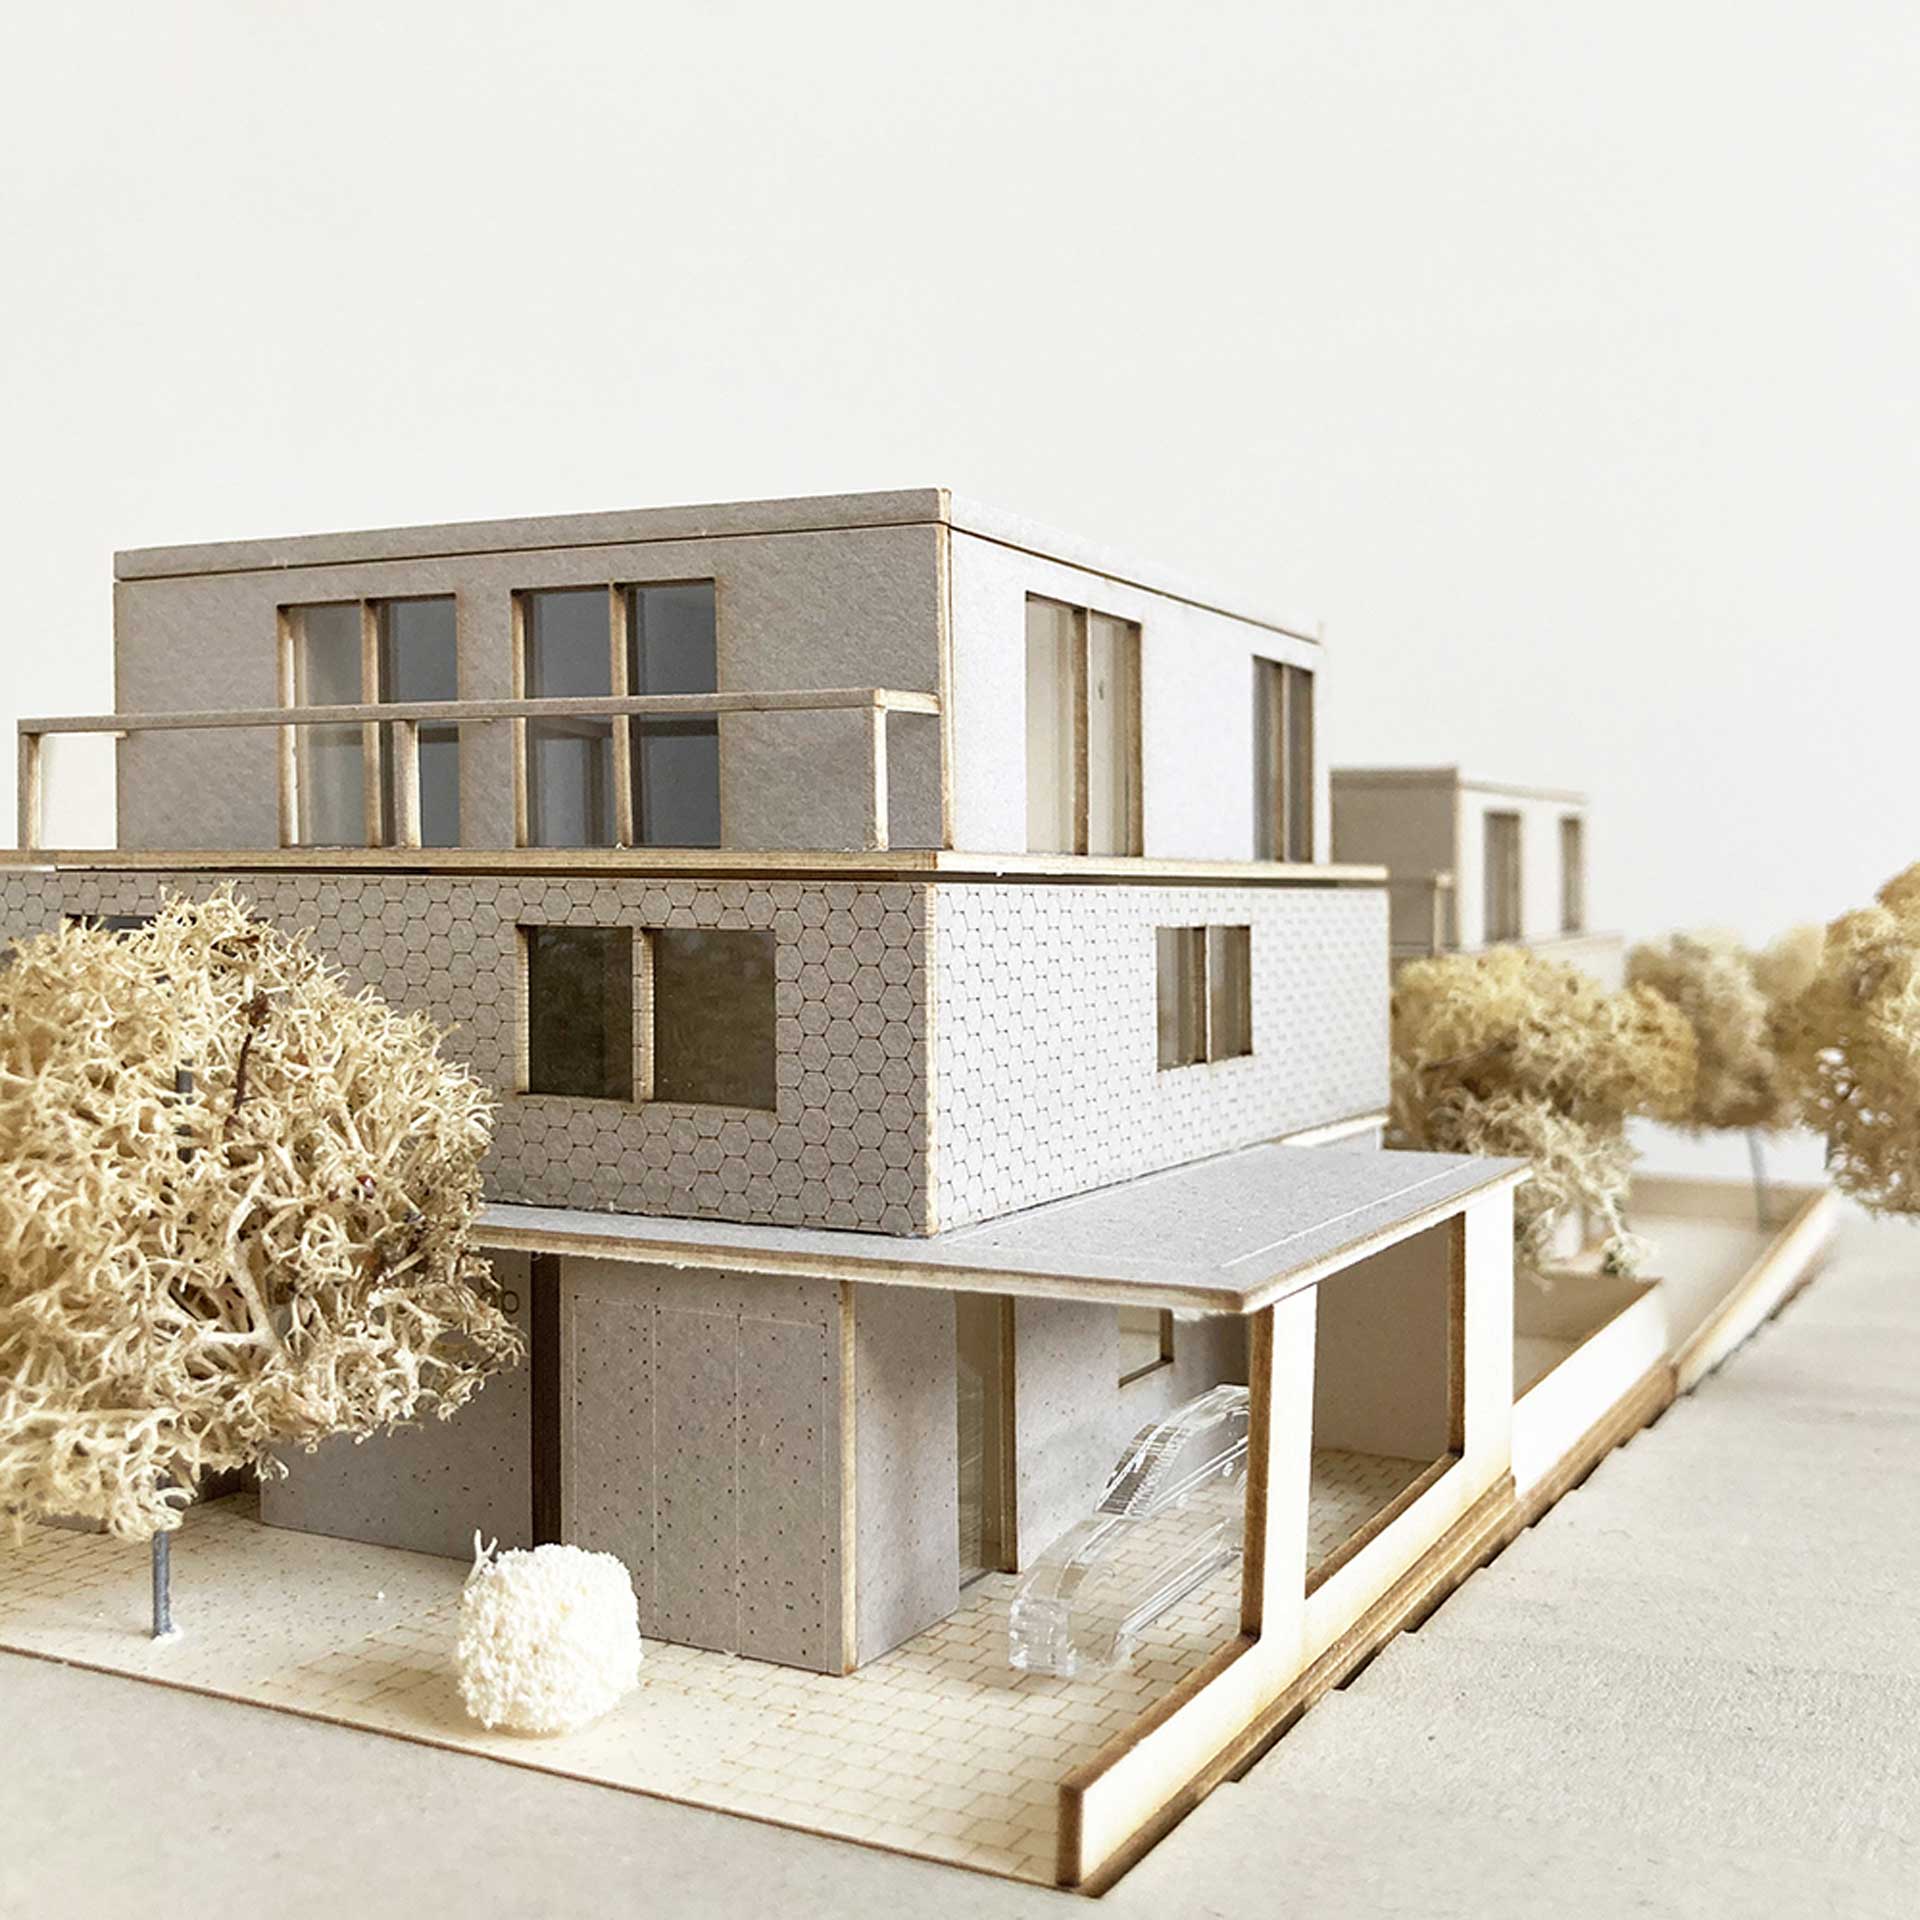 Holzbau, Architektur, Nachhaltigkeit, Bauen, Neubau, Einfamilienhaus, Doppelhaus, Modell, Architekturmodell